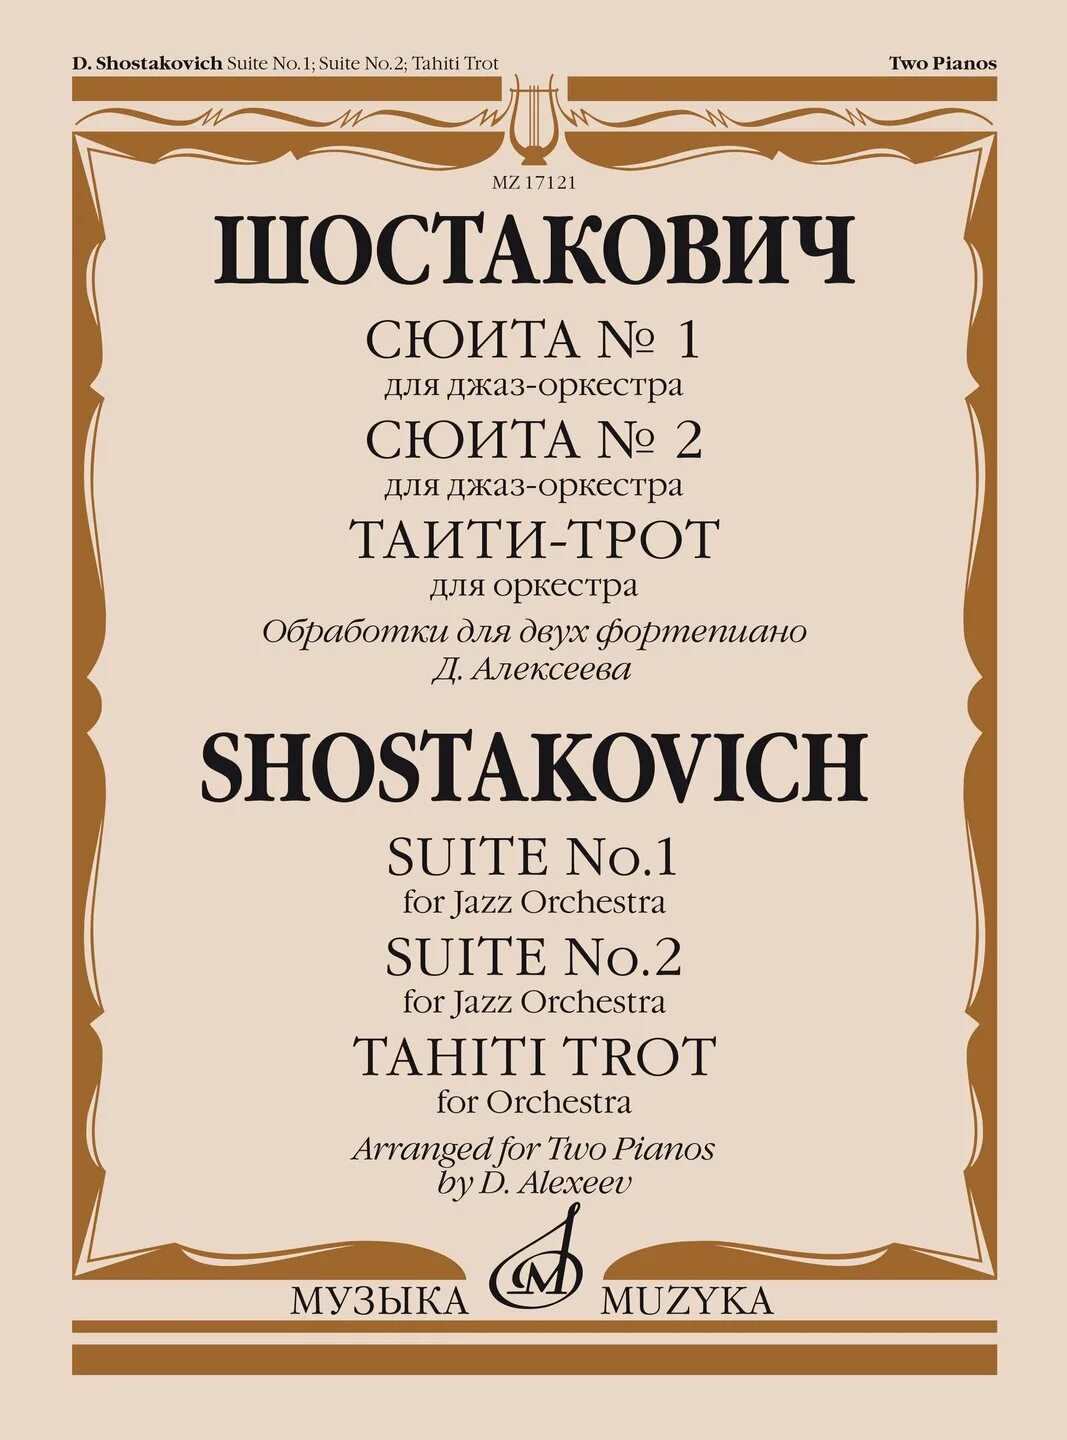 Произведения для фортепиано шостаковича. Шостакович Таити-трот. Джазовая сюита Шостаковича. Шостакович джаз сюита 2. Джазовая сюита Шостаковича для двух фортепиано.